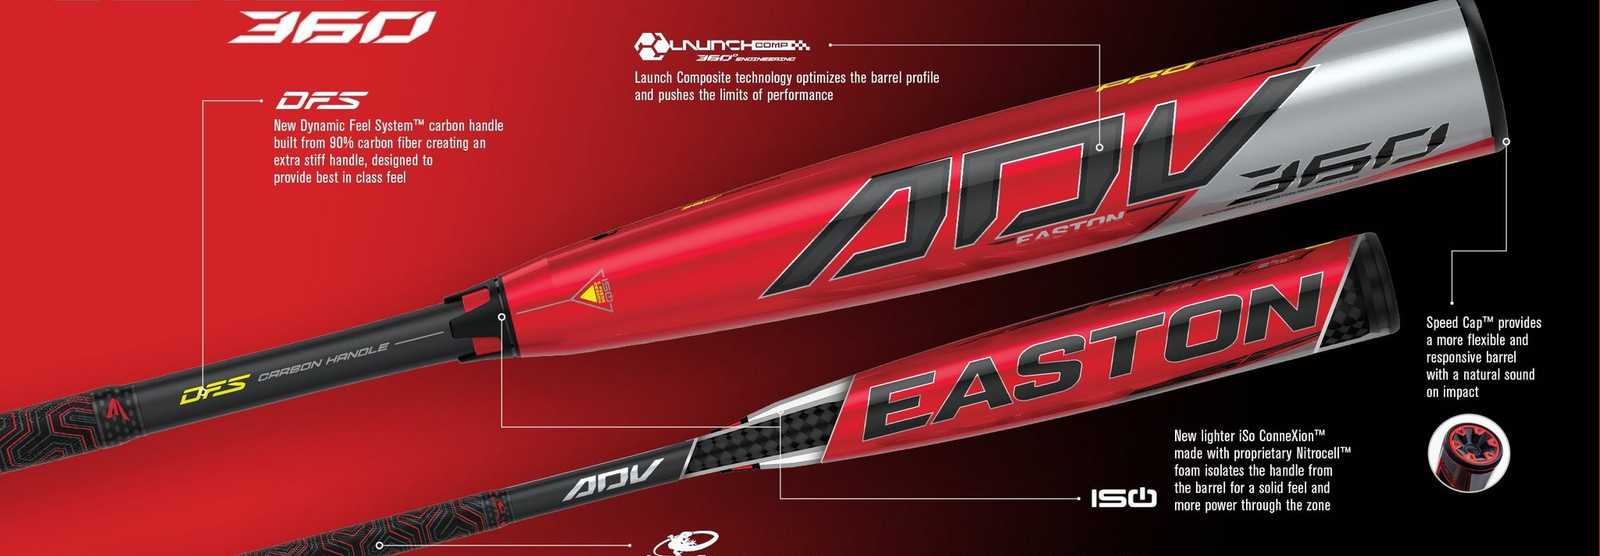 Adv 360 3 Bbcor 2 Piece Pro Balanced Composite Bat Easton